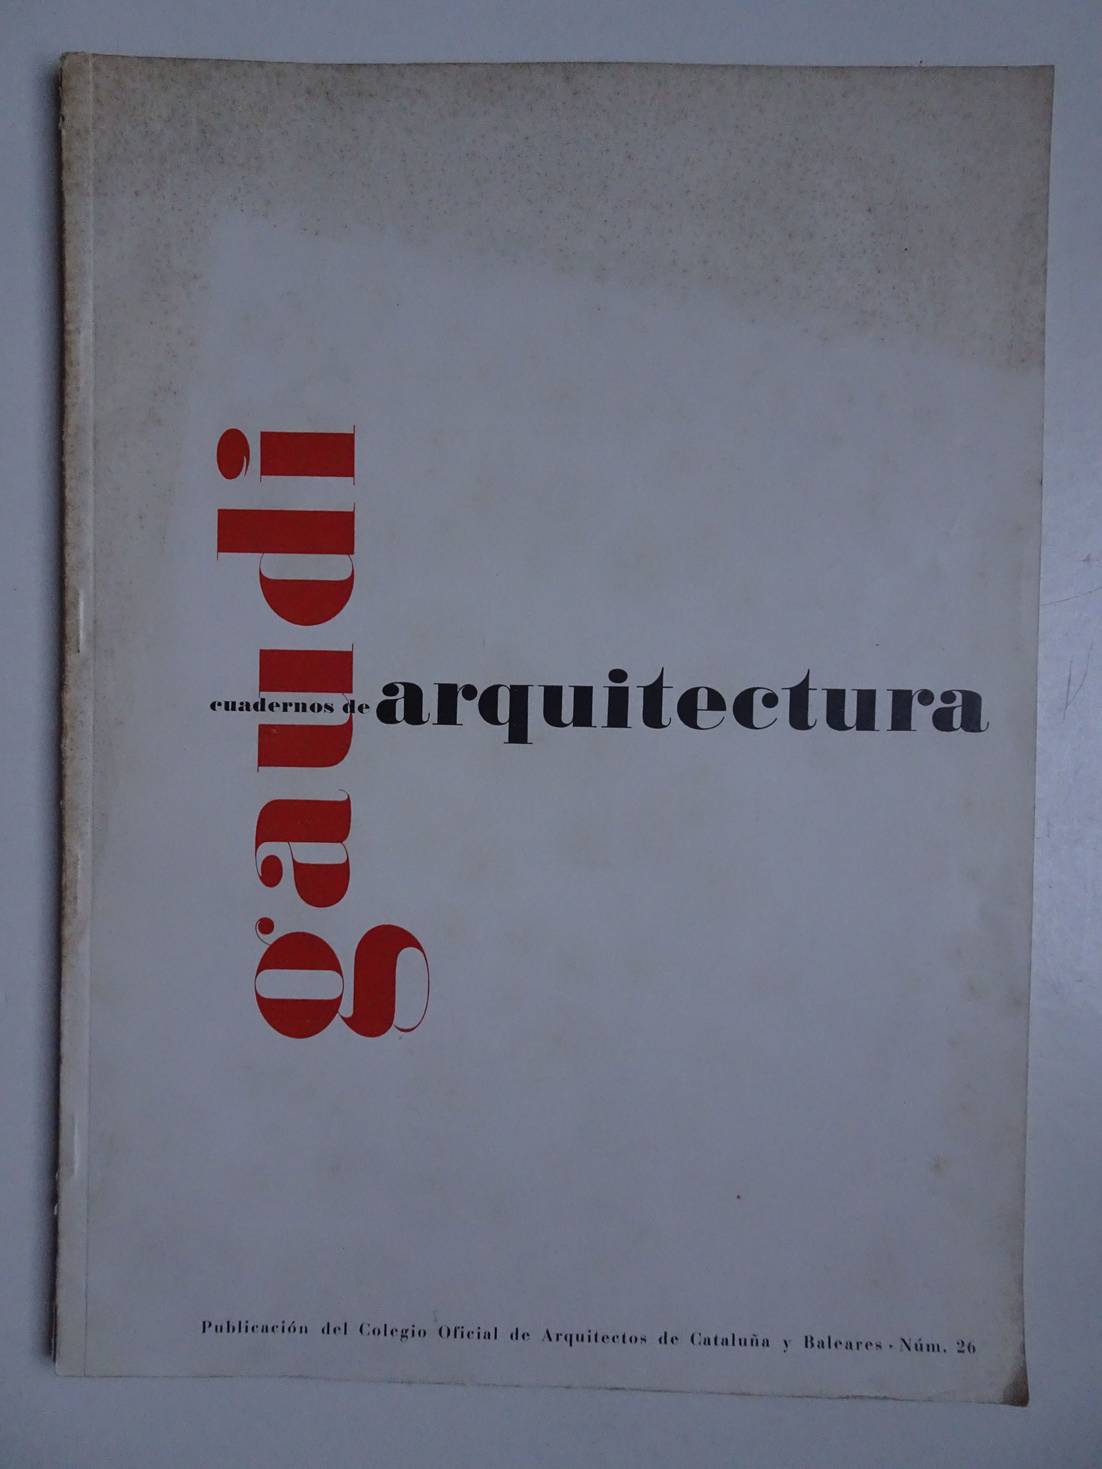 Infiesta Prez, Manuel, Llimona Raymat, Enrique, Mascar Vinets, Joaqun, et al (ed.). - Cuadernos de arquitectura, no. 26; Gaud.